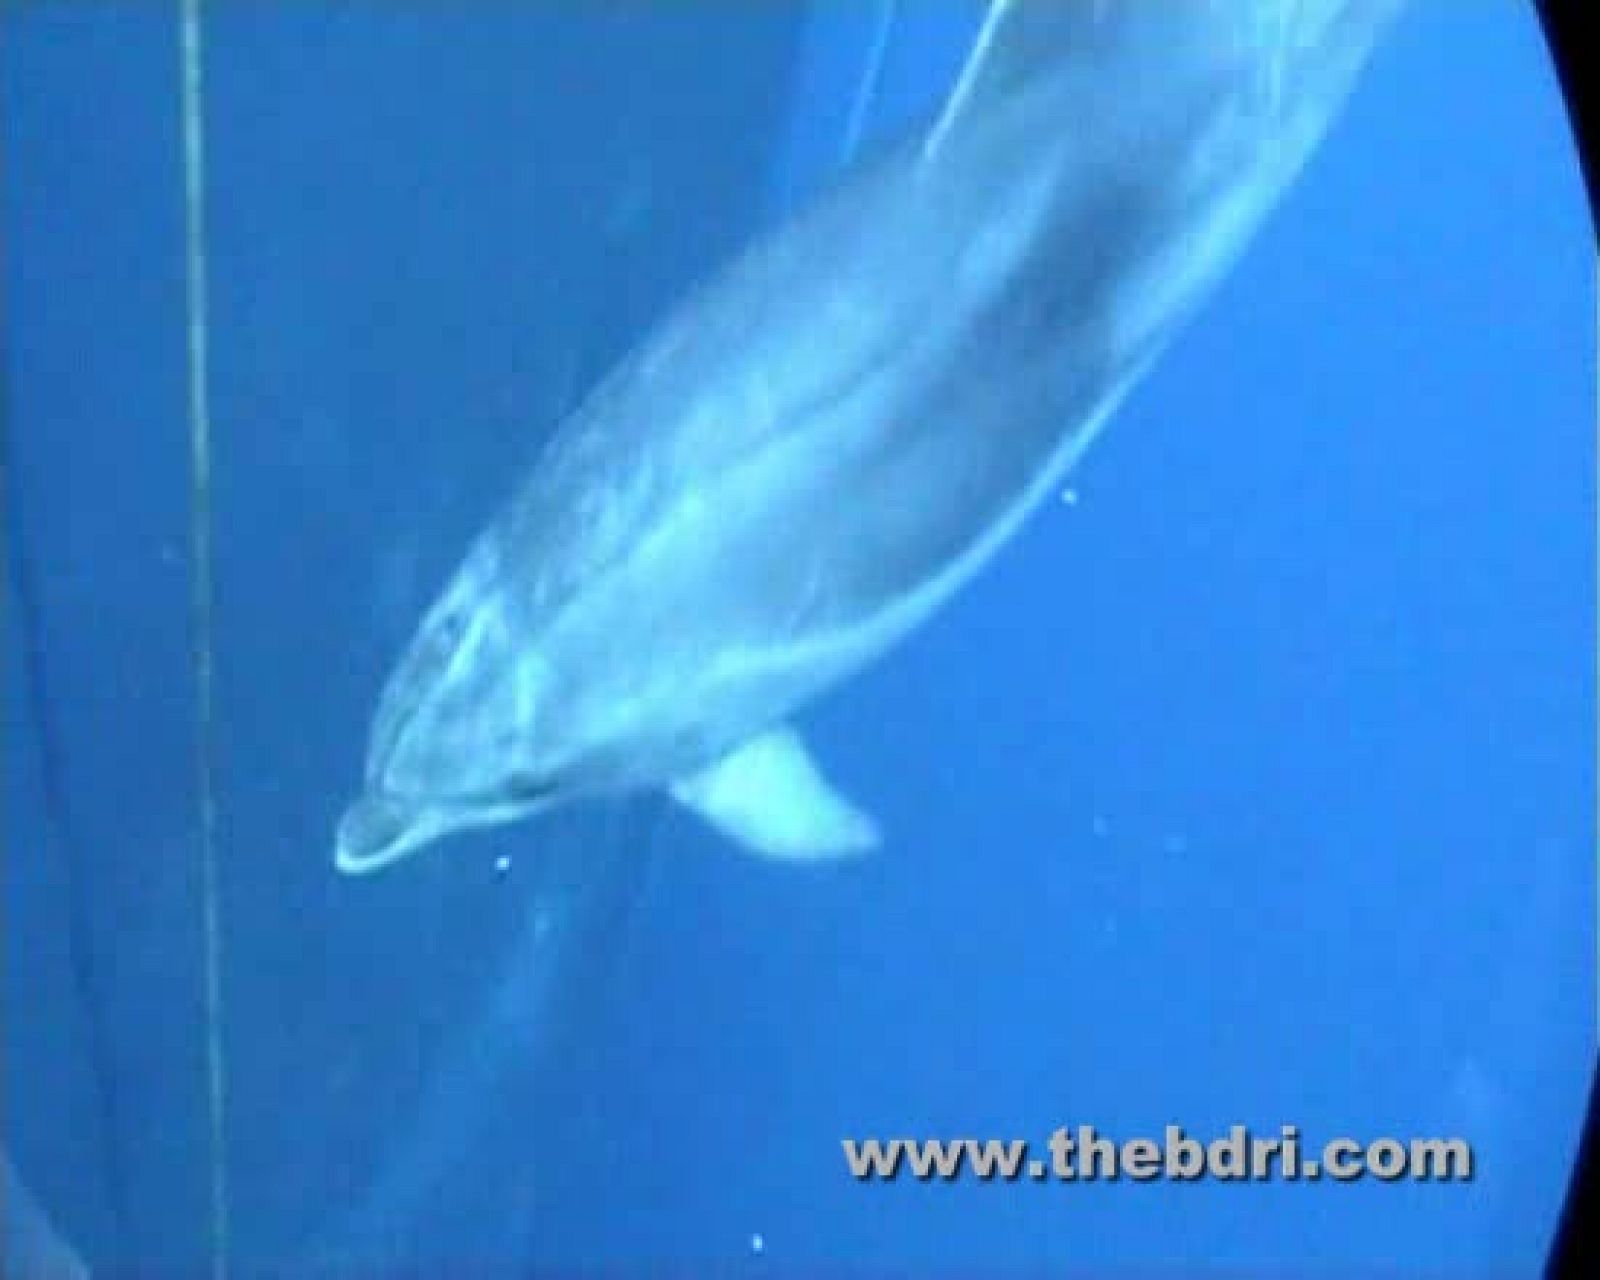 Sonidos pulsátiles de los delfines para evitar agresiones físicas